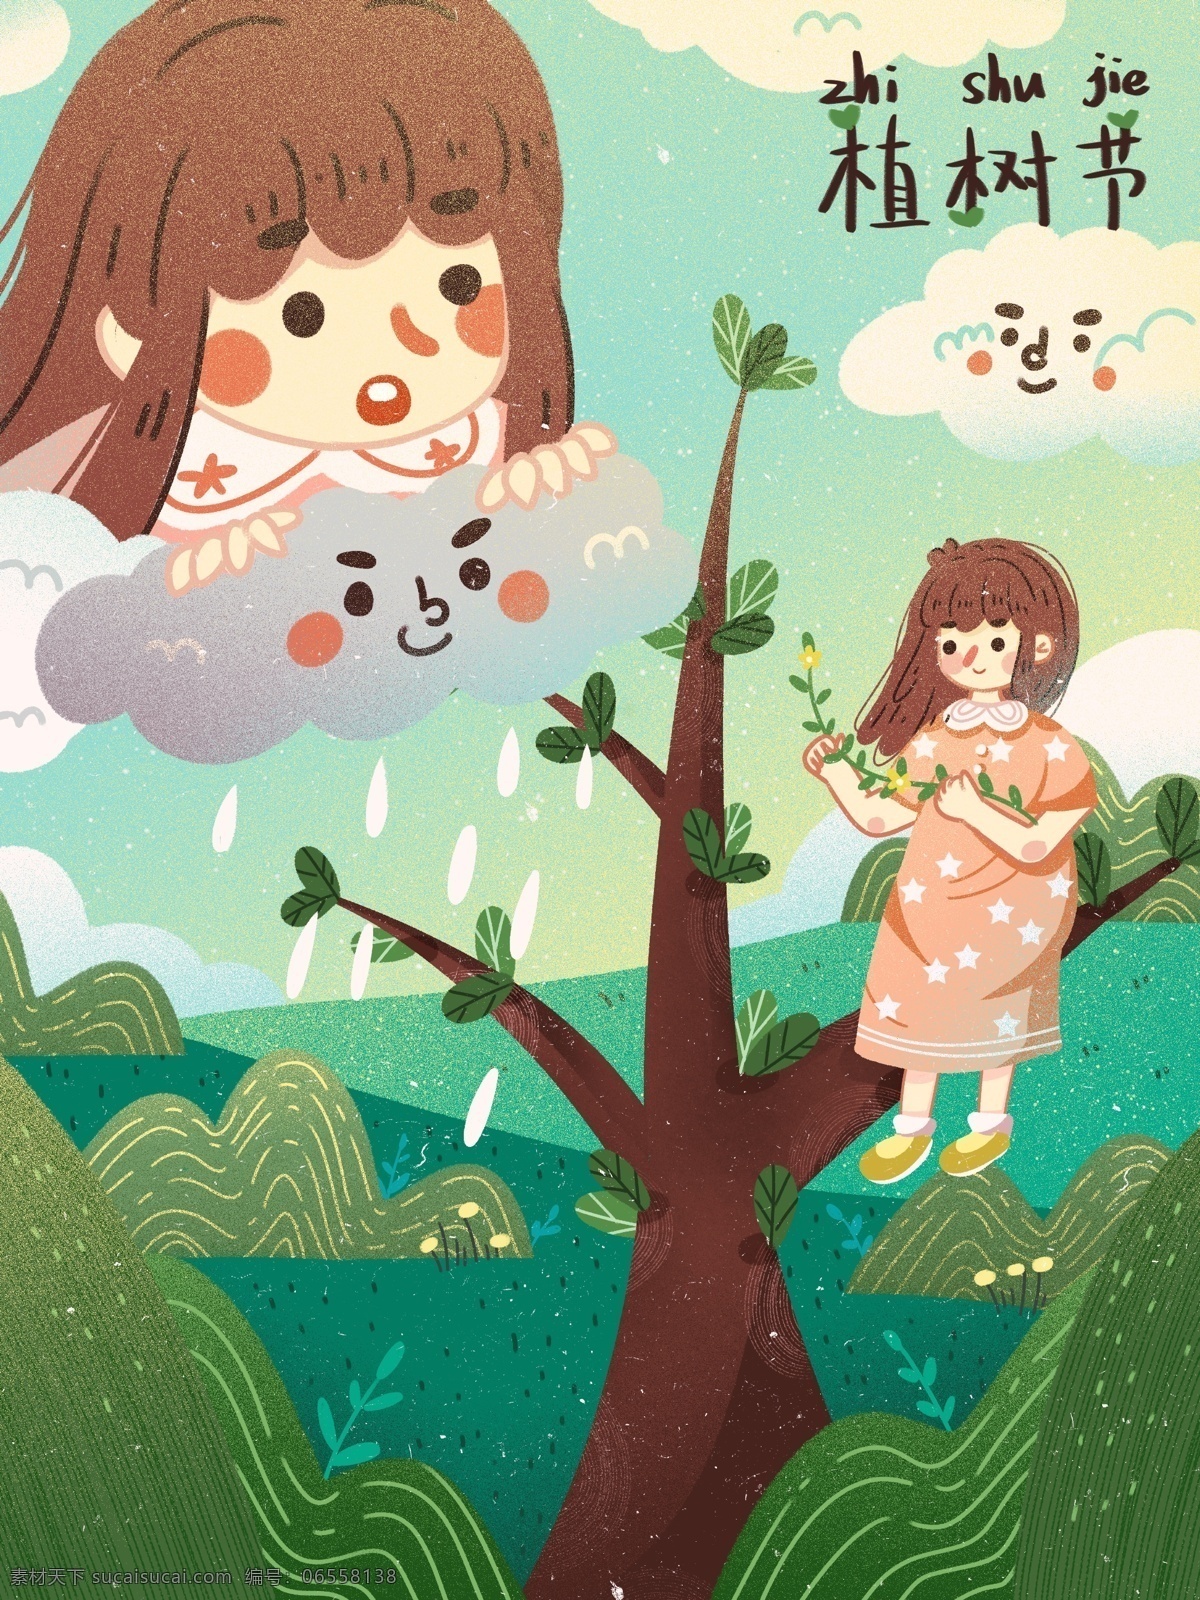 植树节 种树 下雨 春天 可爱 治愈 温馨 创意 海报 插画 植物 你好 乌云 温暖 女孩 小树苗